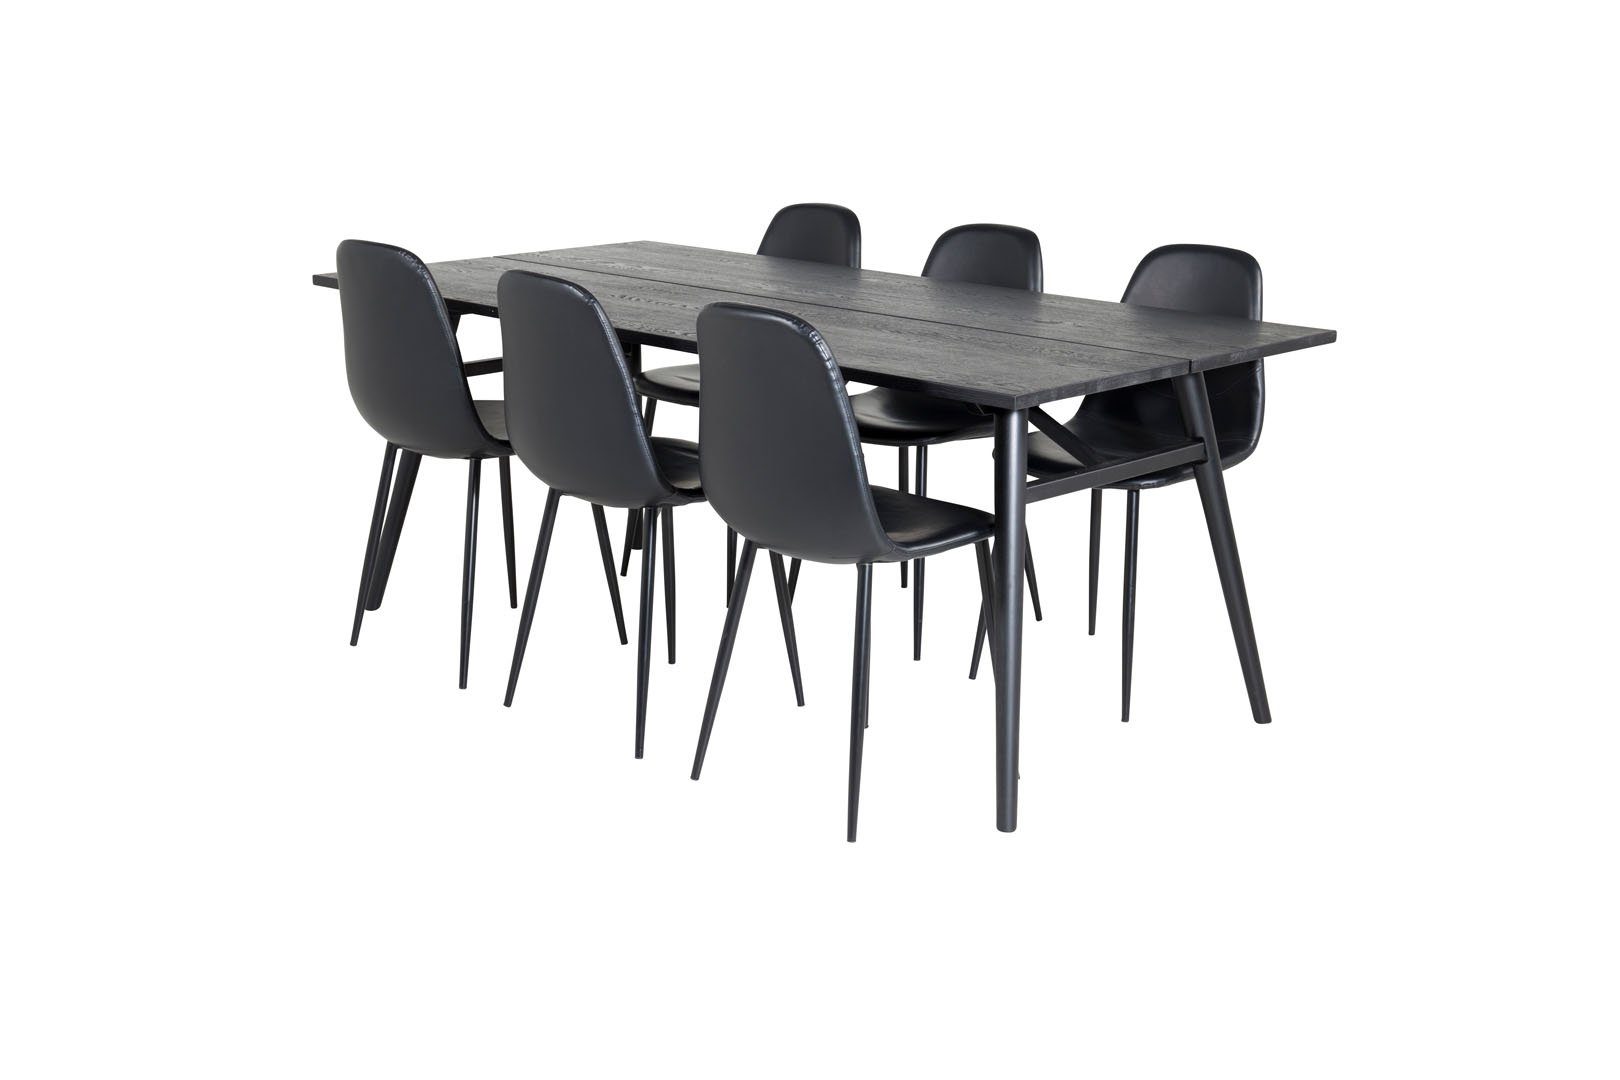 Lä, Essgruppe Essgruppe Tisch Sleek ebuy24 ausziehbarer schwarz;schwarzPUKunstleder Esstisch (7-tlg)